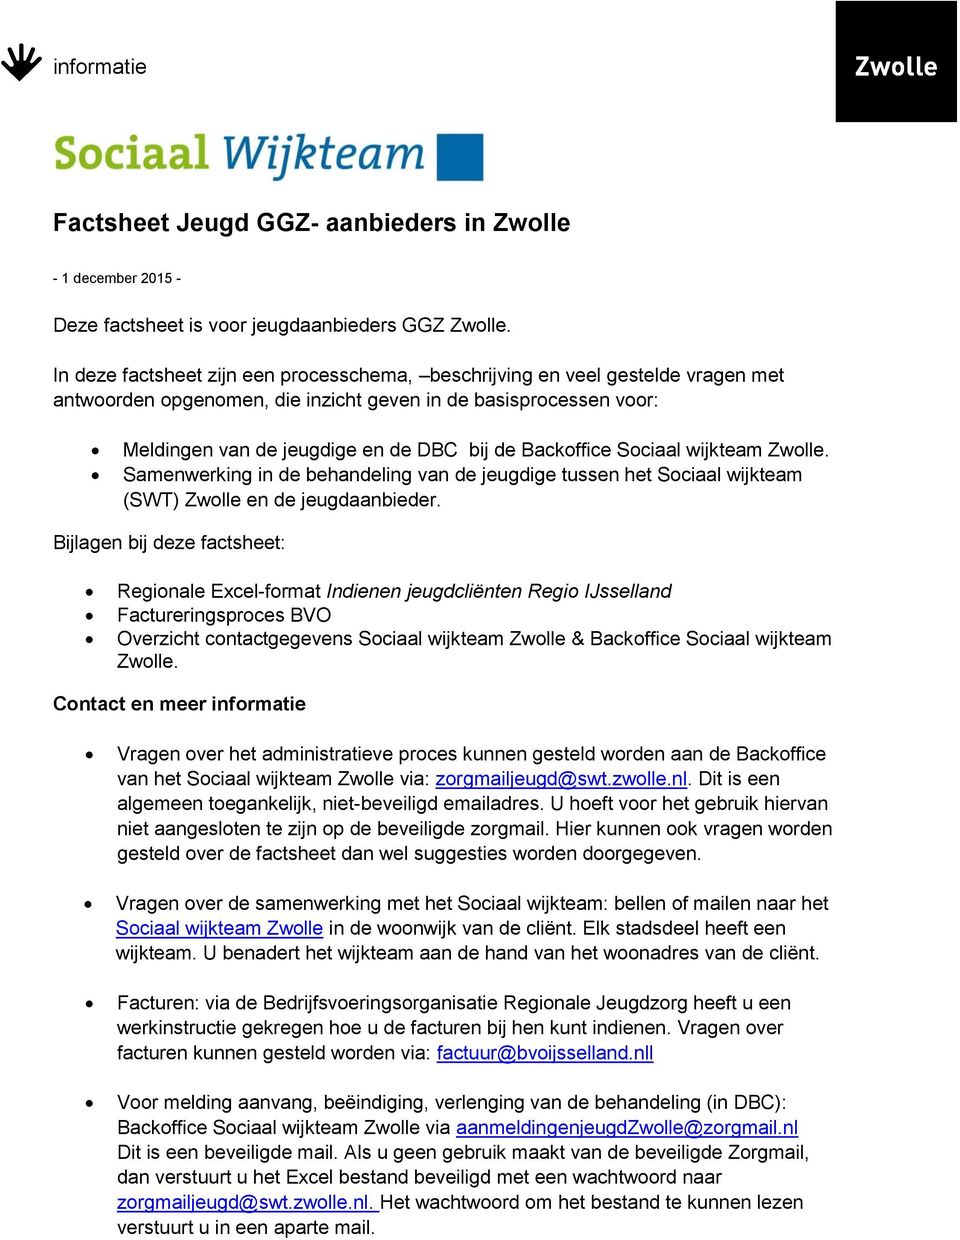 Backoffice Sociaal wijkteam Zwolle. Samenwerking in de behandeling van de jeugdige tussen het Sociaal wijkteam (SWT) Zwolle en de jeugdaanbieder.